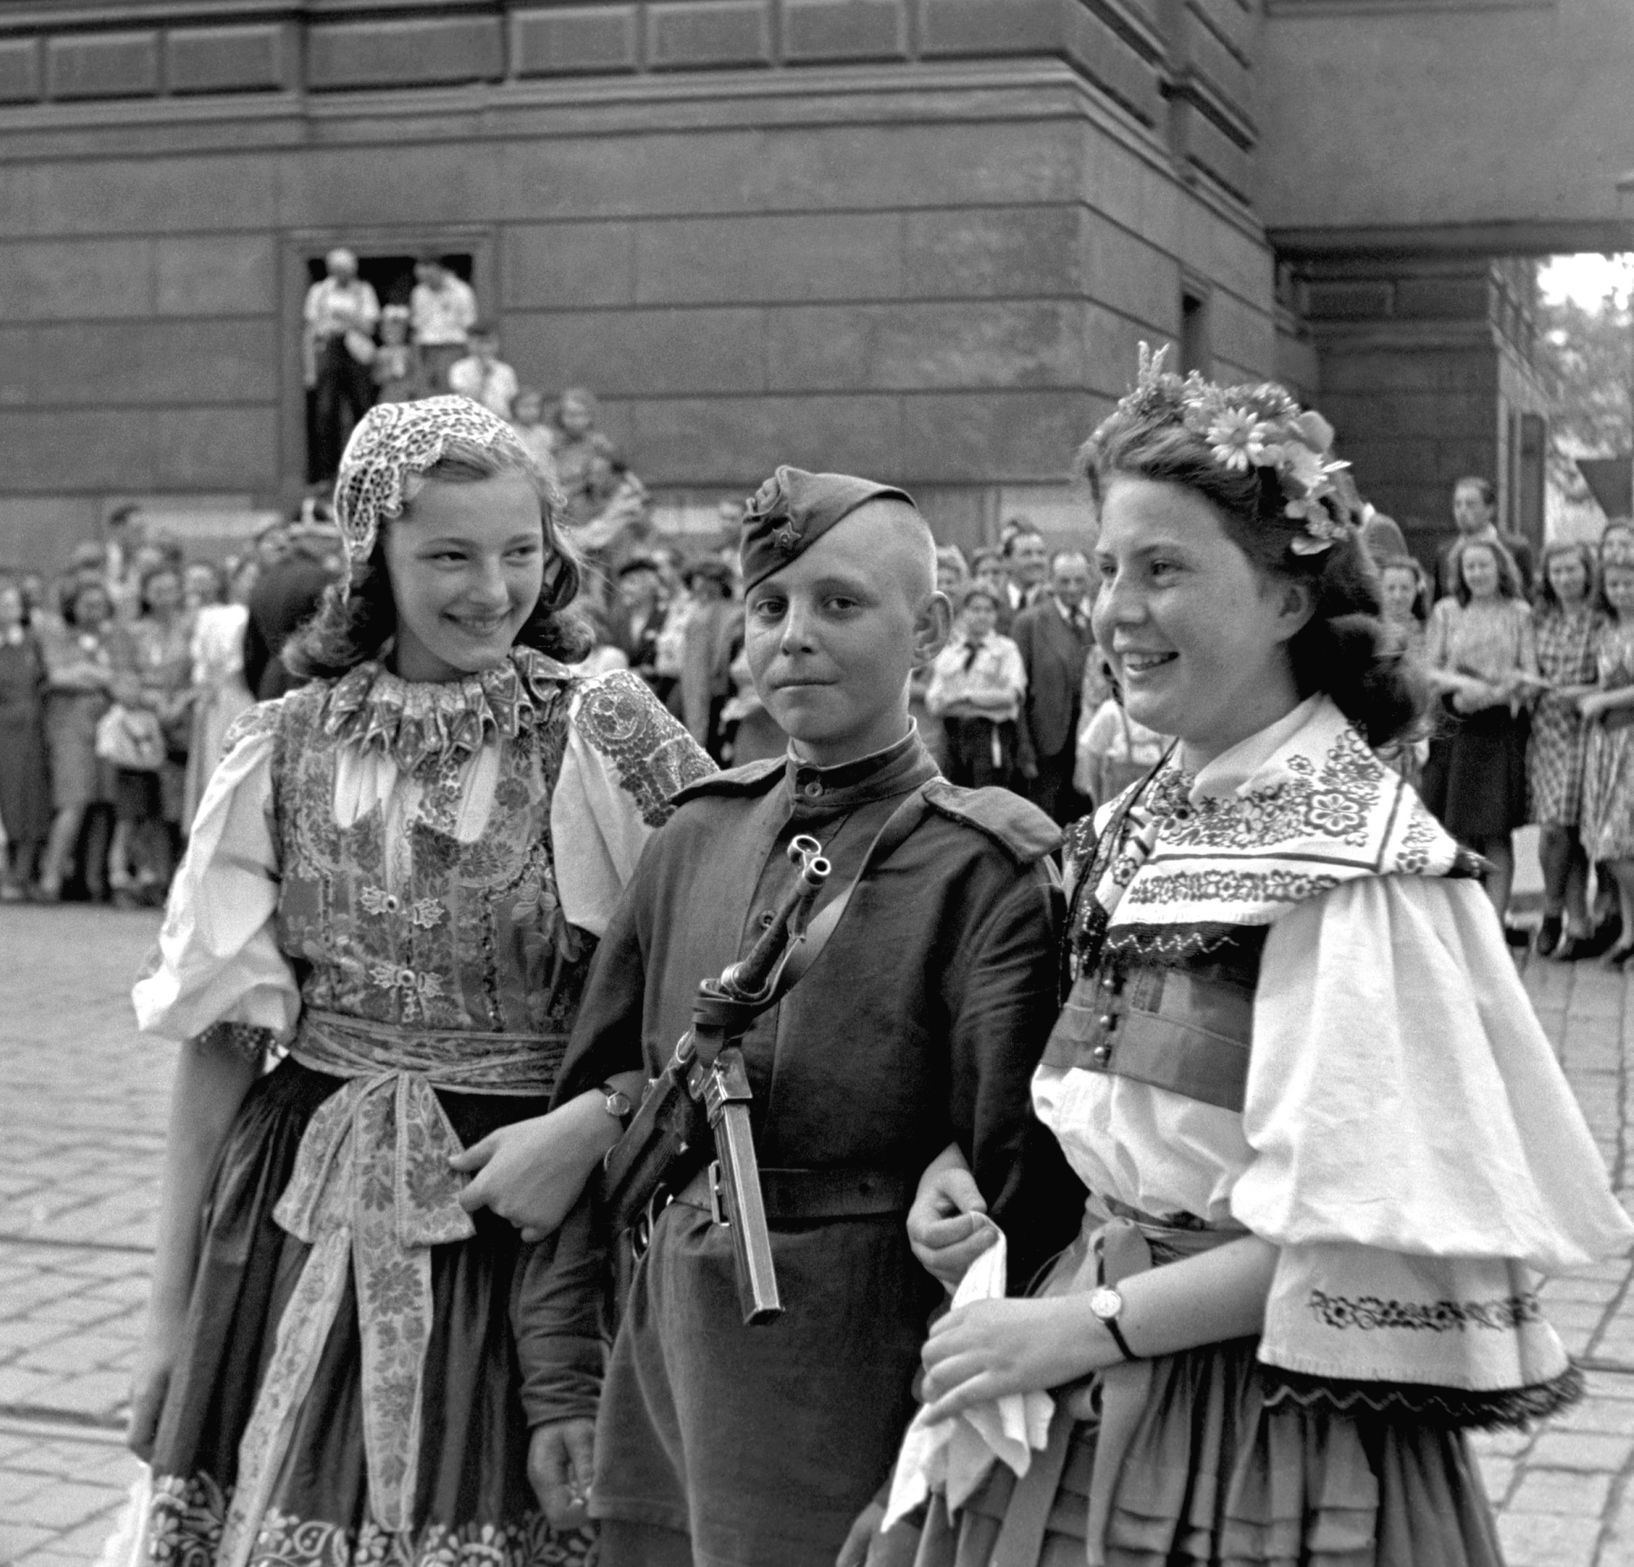 Osvobození Praha 1945 rudoarmějec s děvčaty k krojích